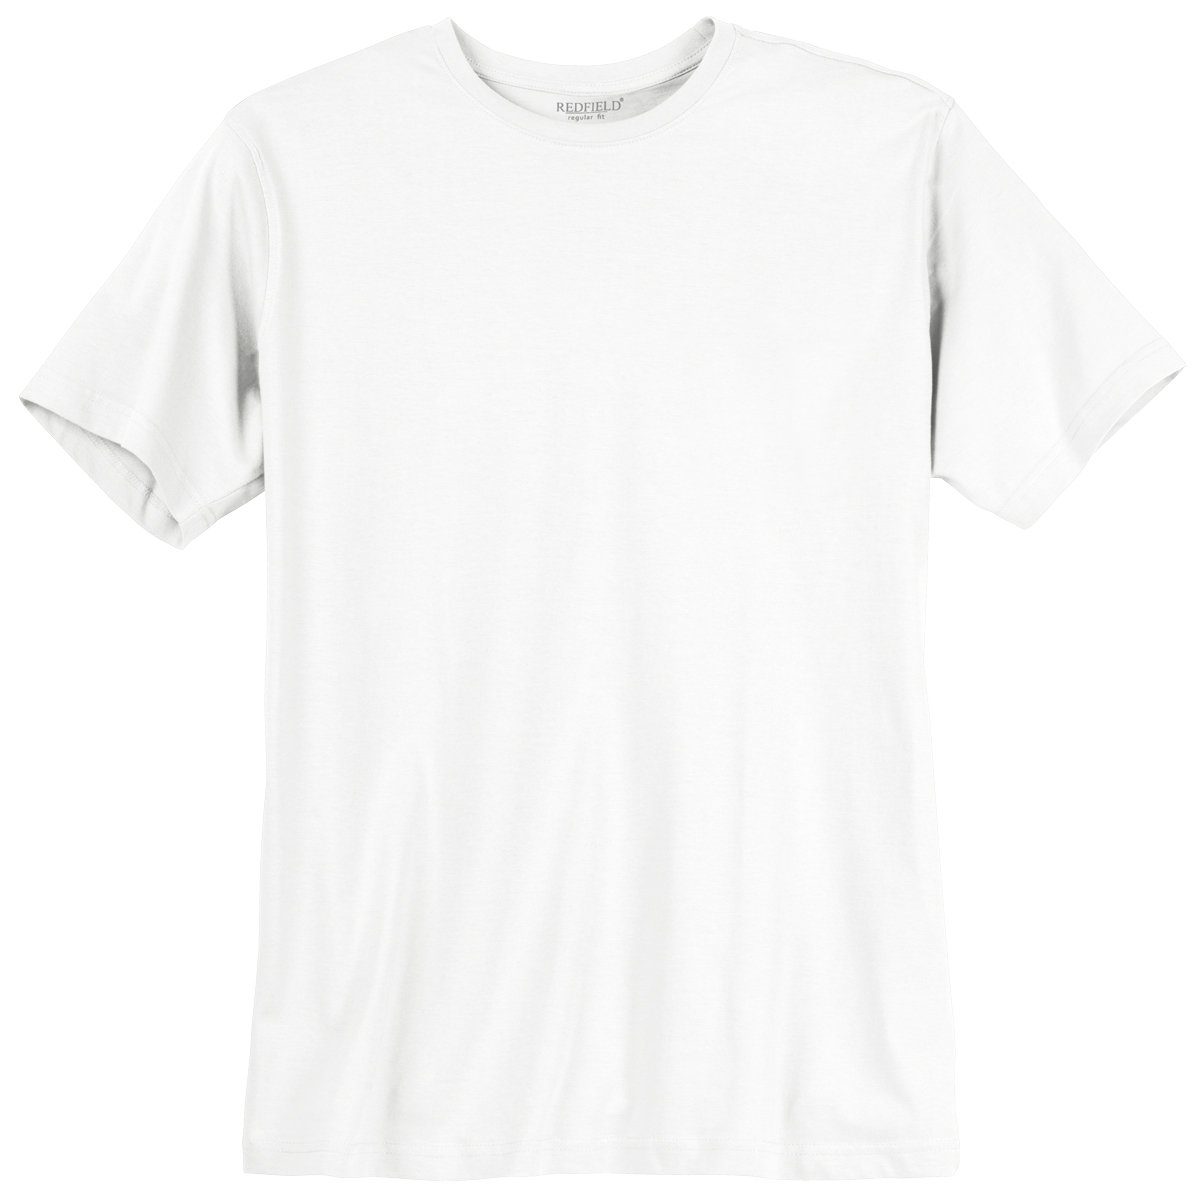 Redfield redfield T-Shirt weiß Rundhalsshirt Übergrößen